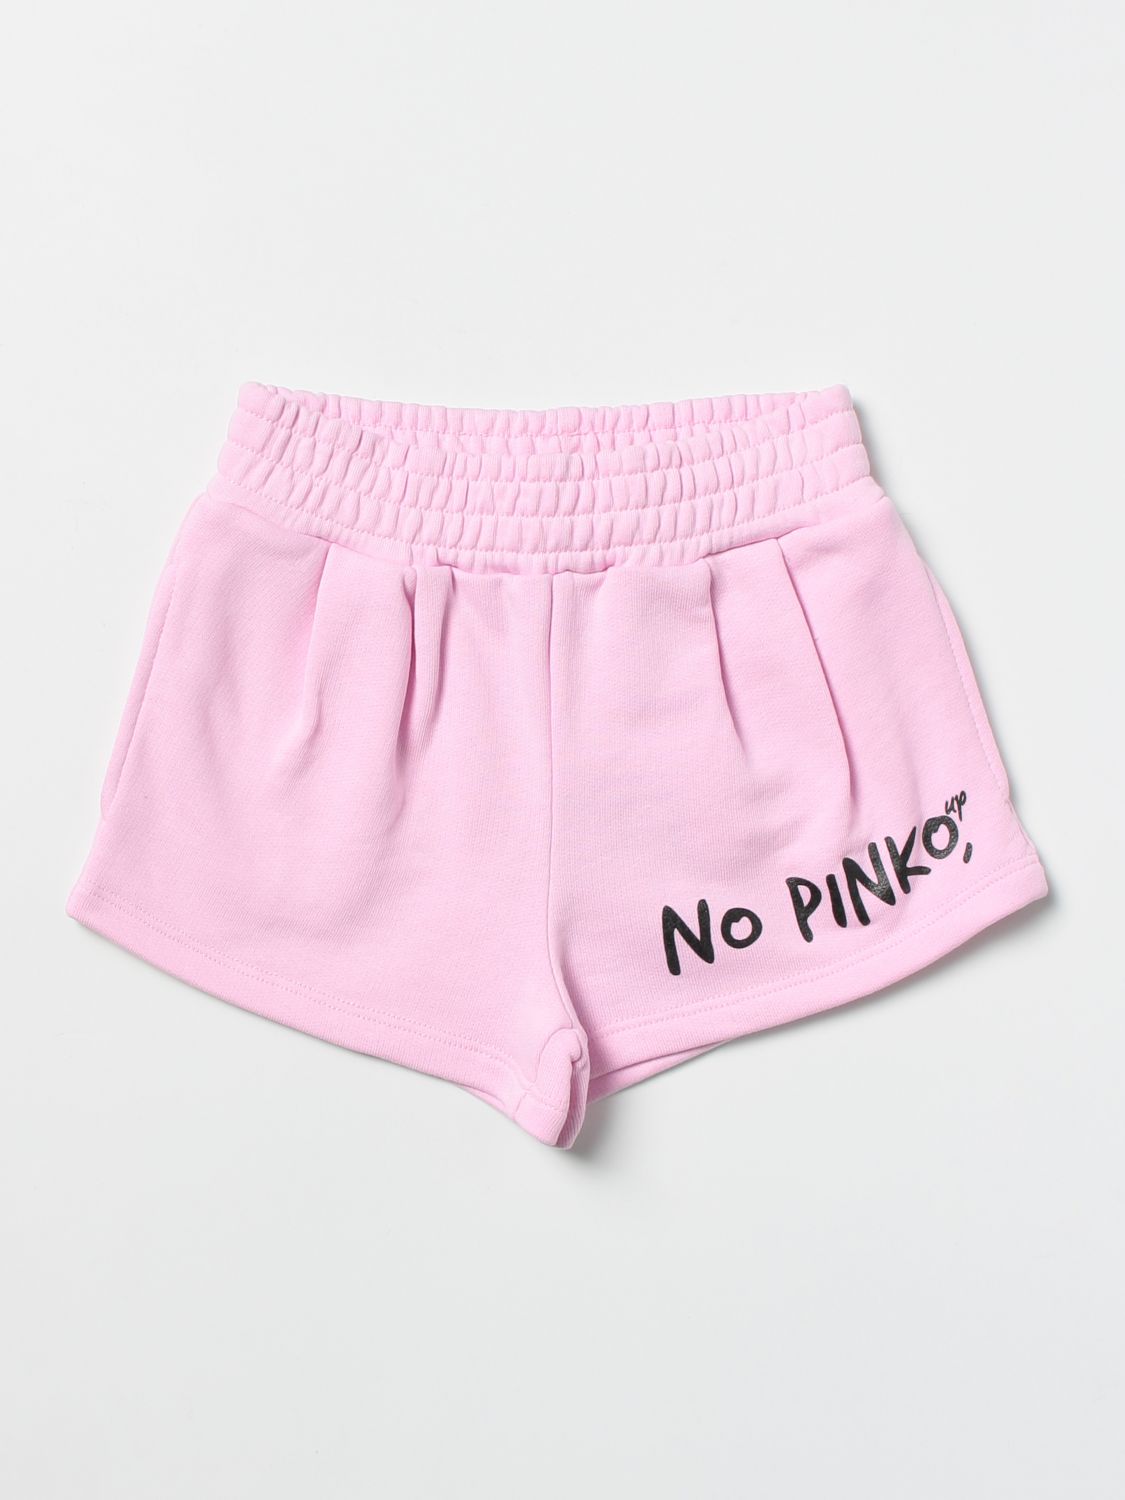 Pantalon court Pinko: Pantalon court Pinko fille rose 1